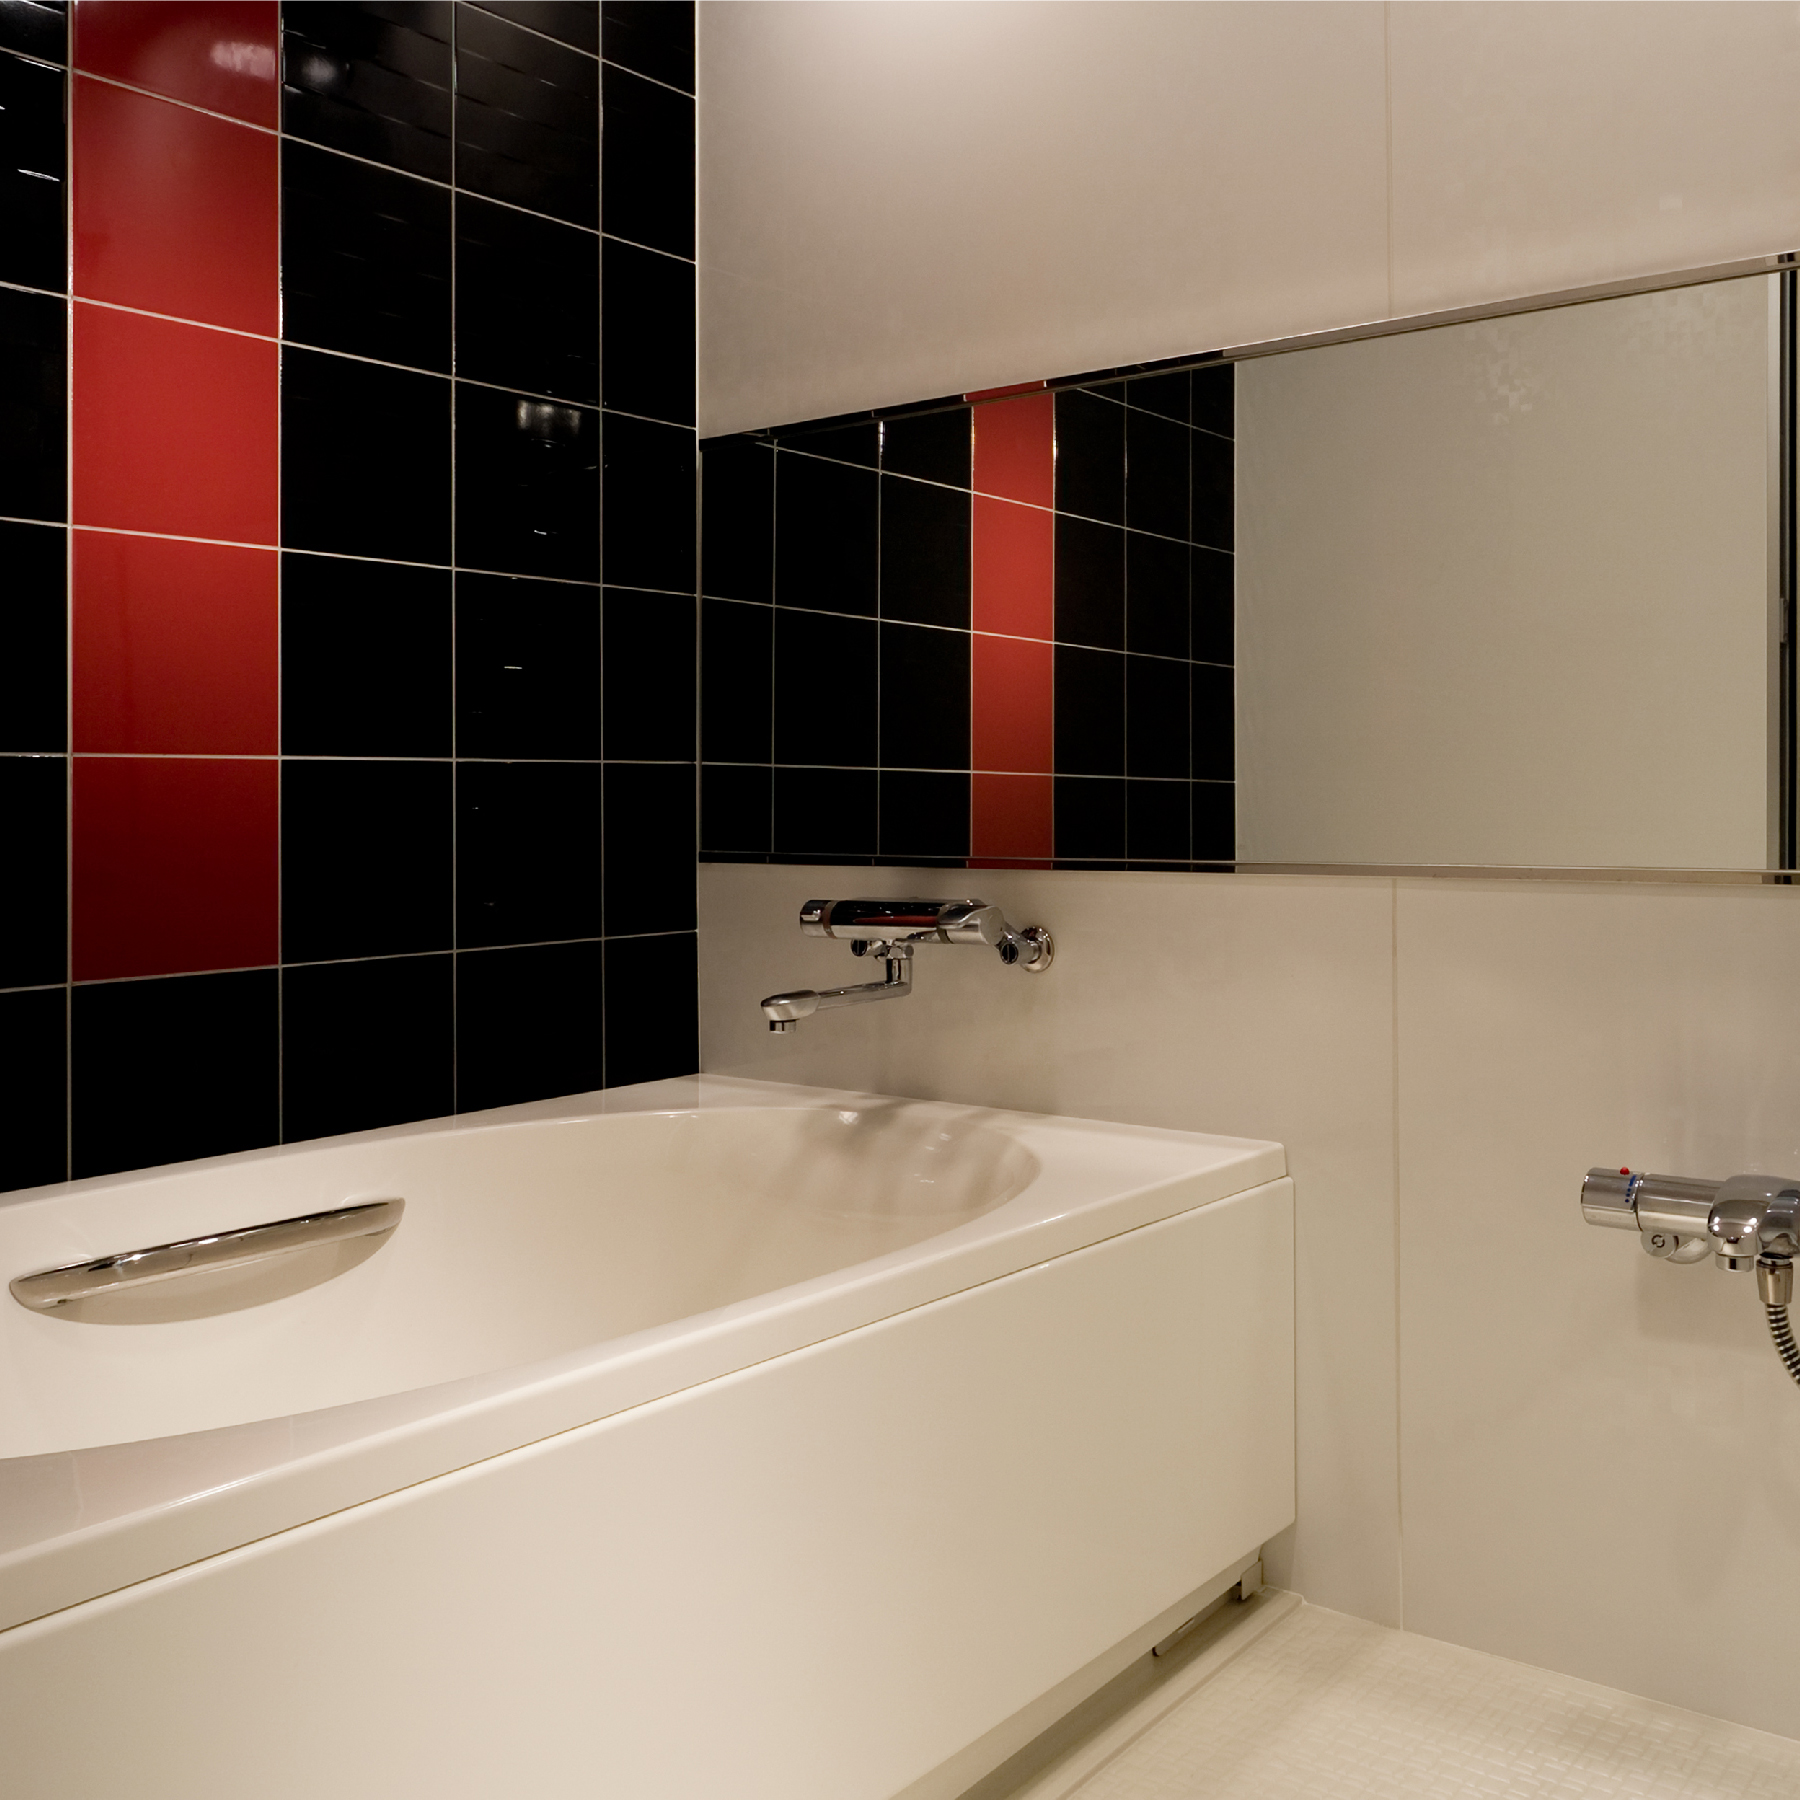 【バスルーム】デラックス43平米和モダンの客室はバス・トイレ・洗面台が全て独立したタイプ